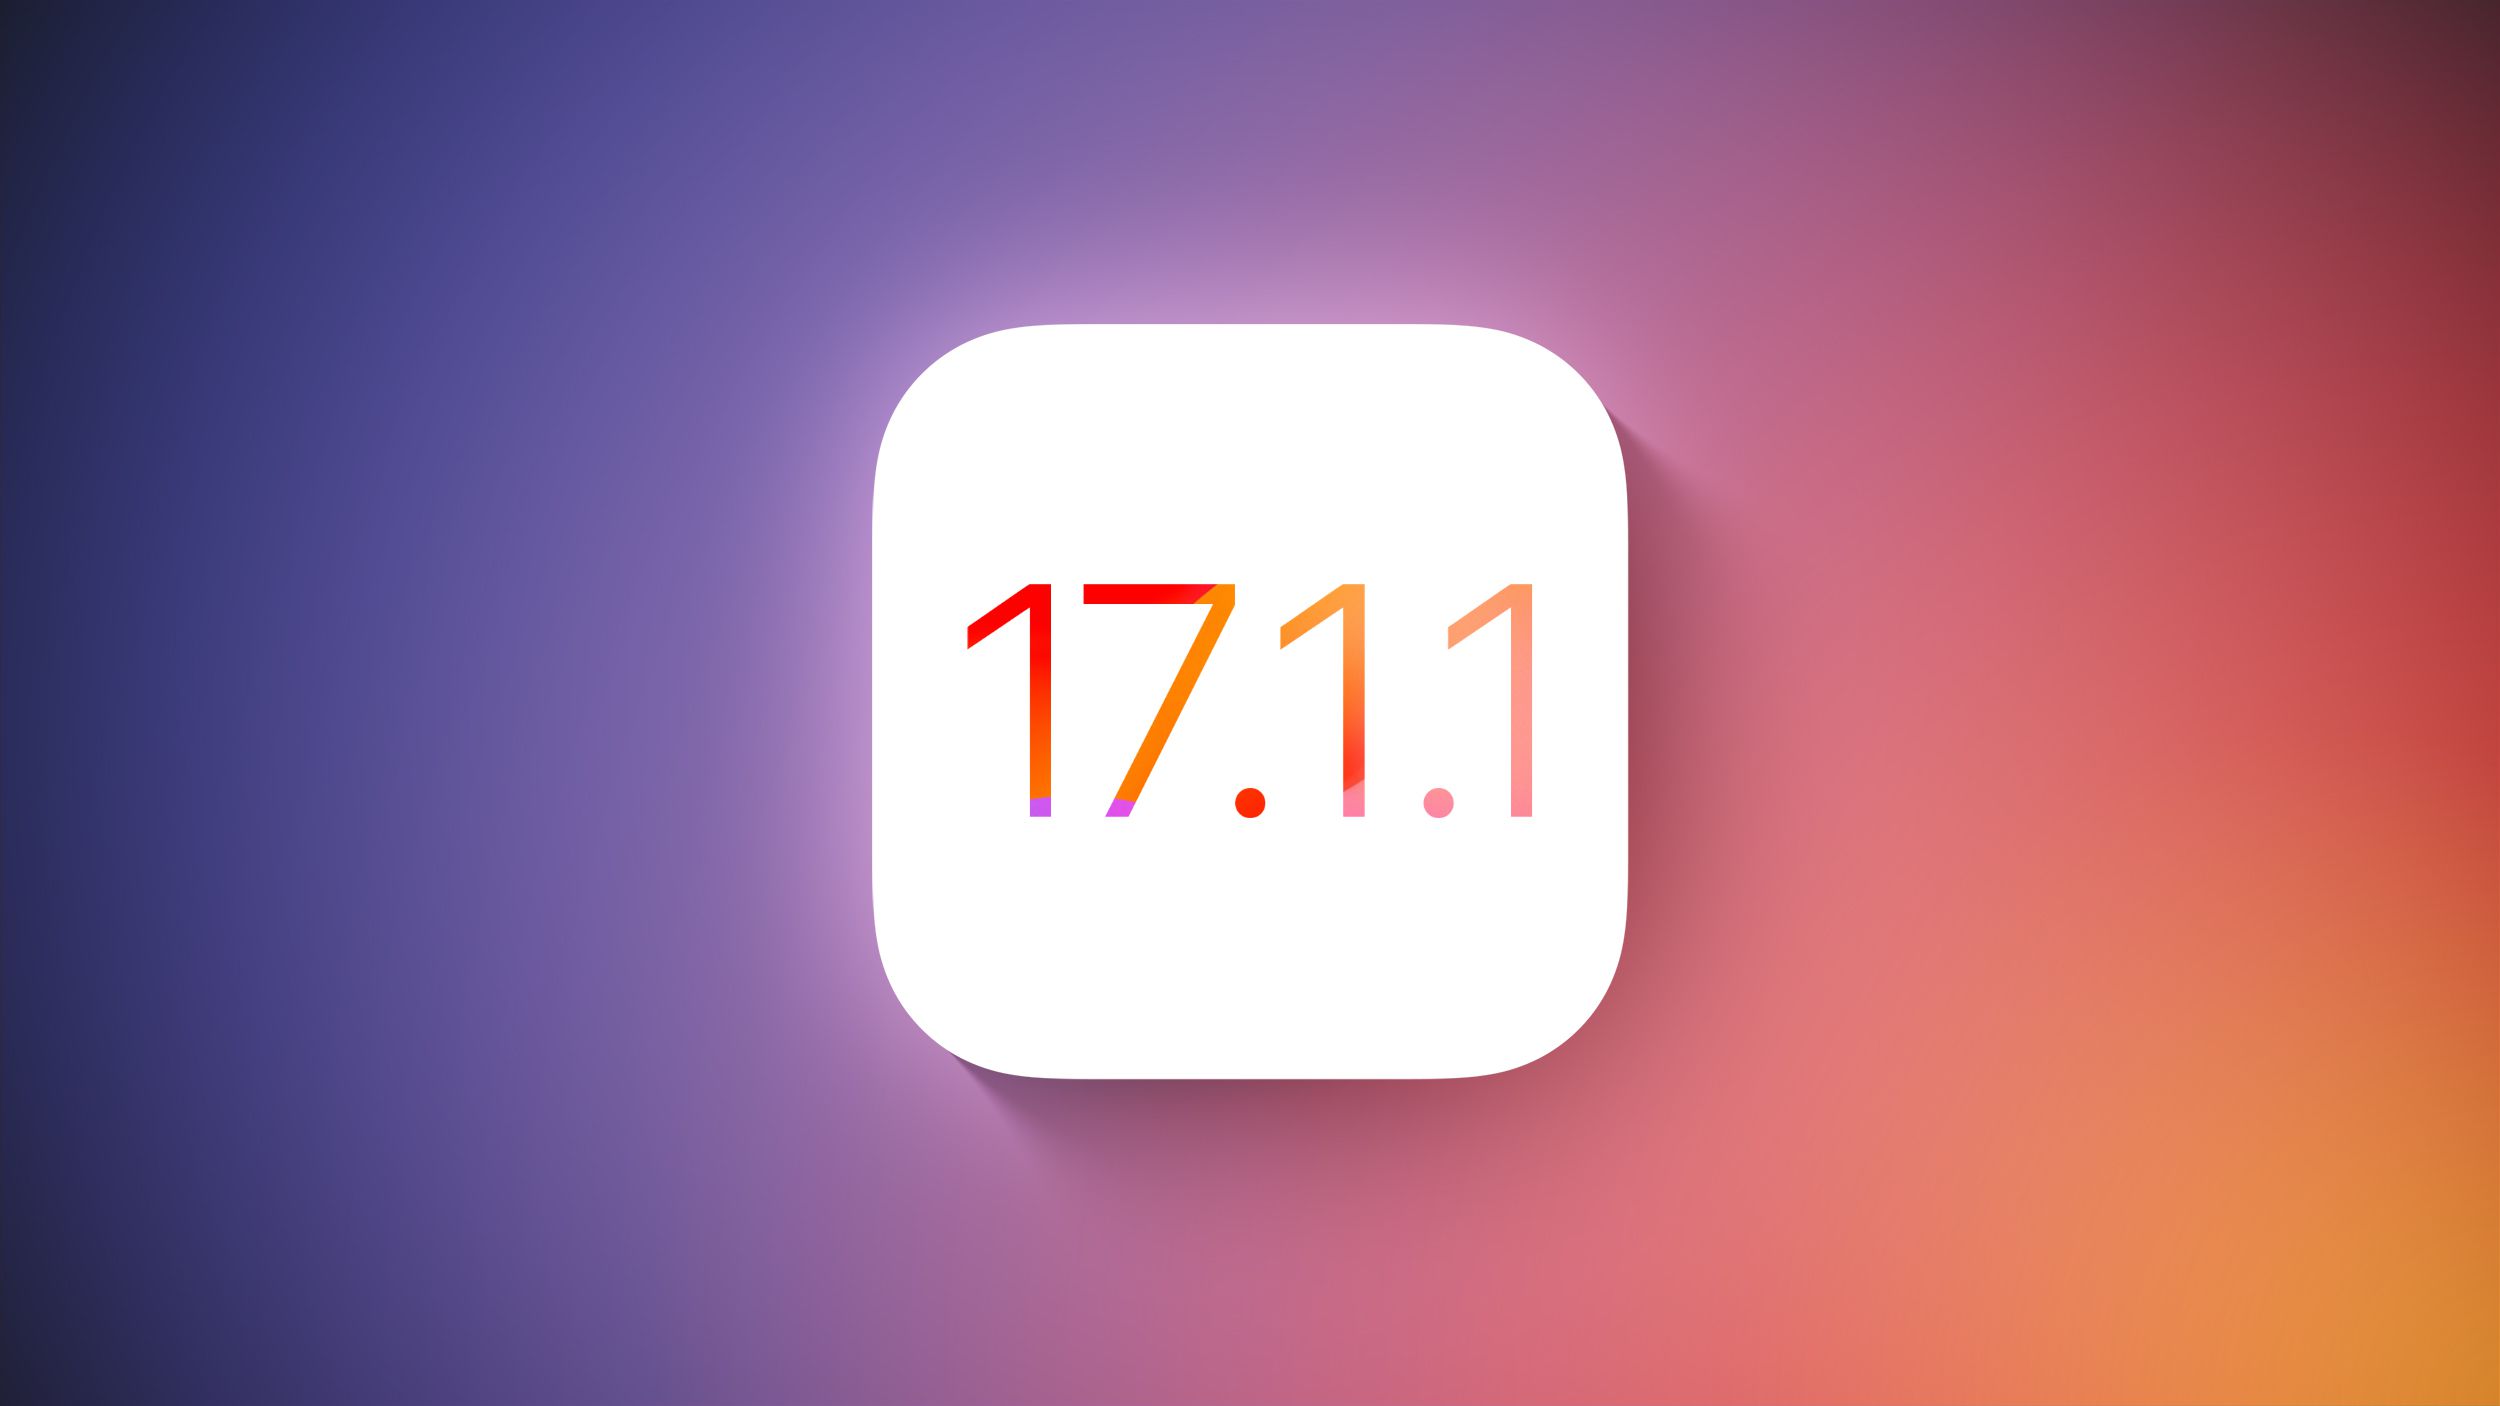 اپل در حال آماده شدن برای انتشار آپدیت iOS 17.1.1 برای آیفون است